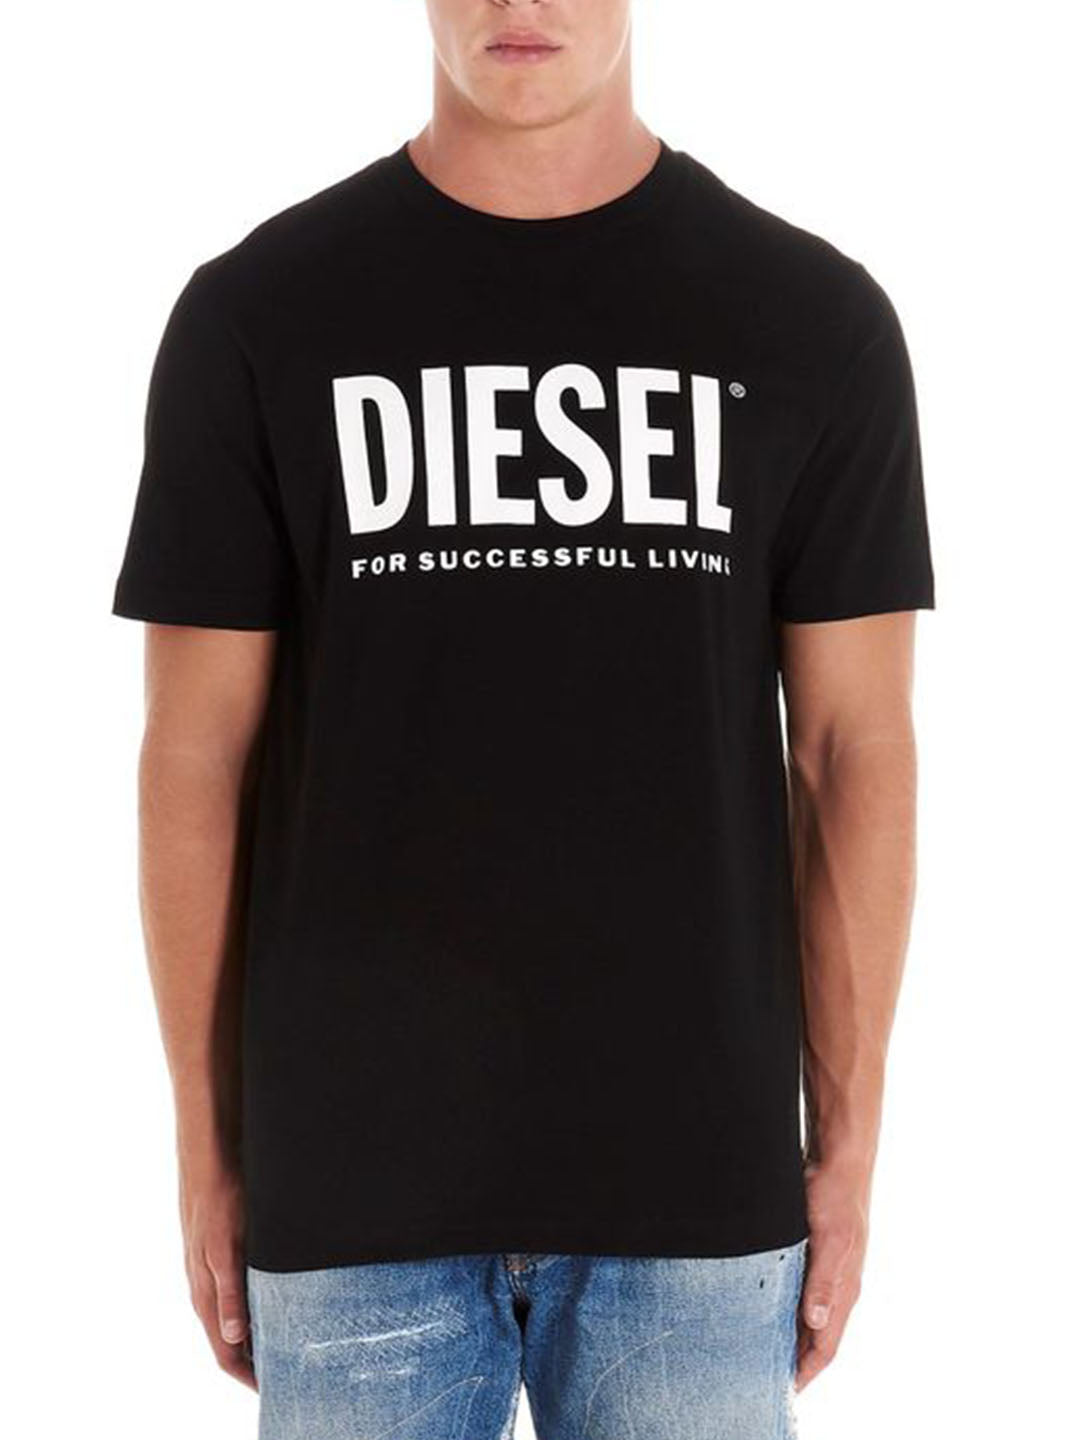 DIESEL black/white cotton T-shirt